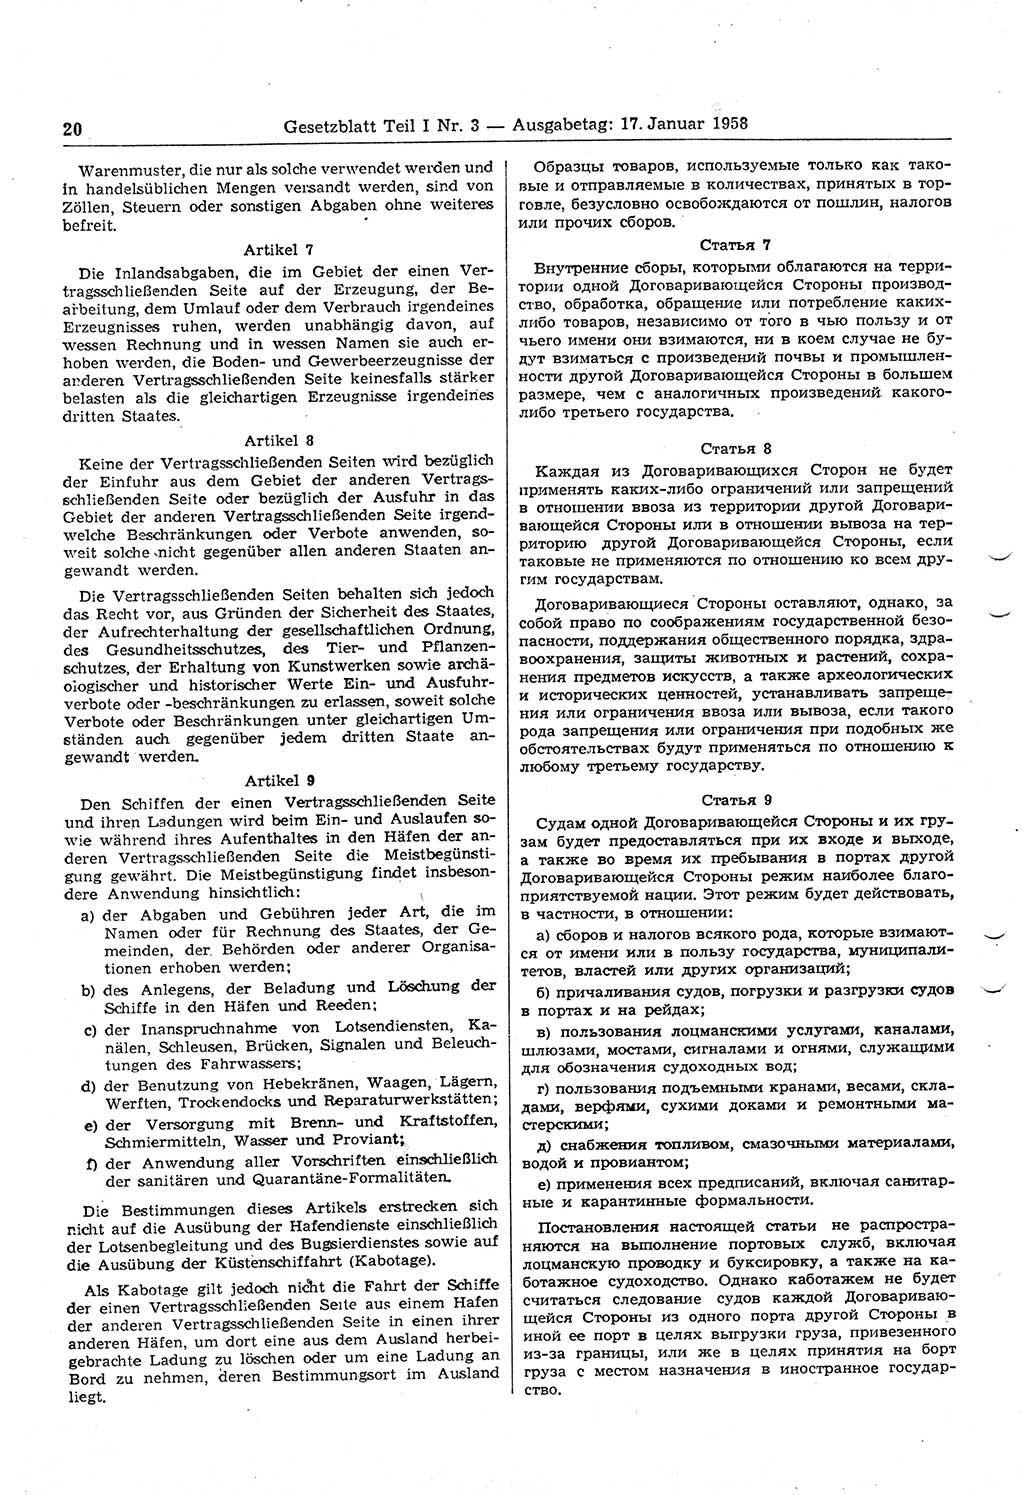 Gesetzblatt (GBl.) der Deutschen Demokratischen Republik (DDR) Teil Ⅰ 1958, Seite 20 (GBl. DDR Ⅰ 1958, S. 20)